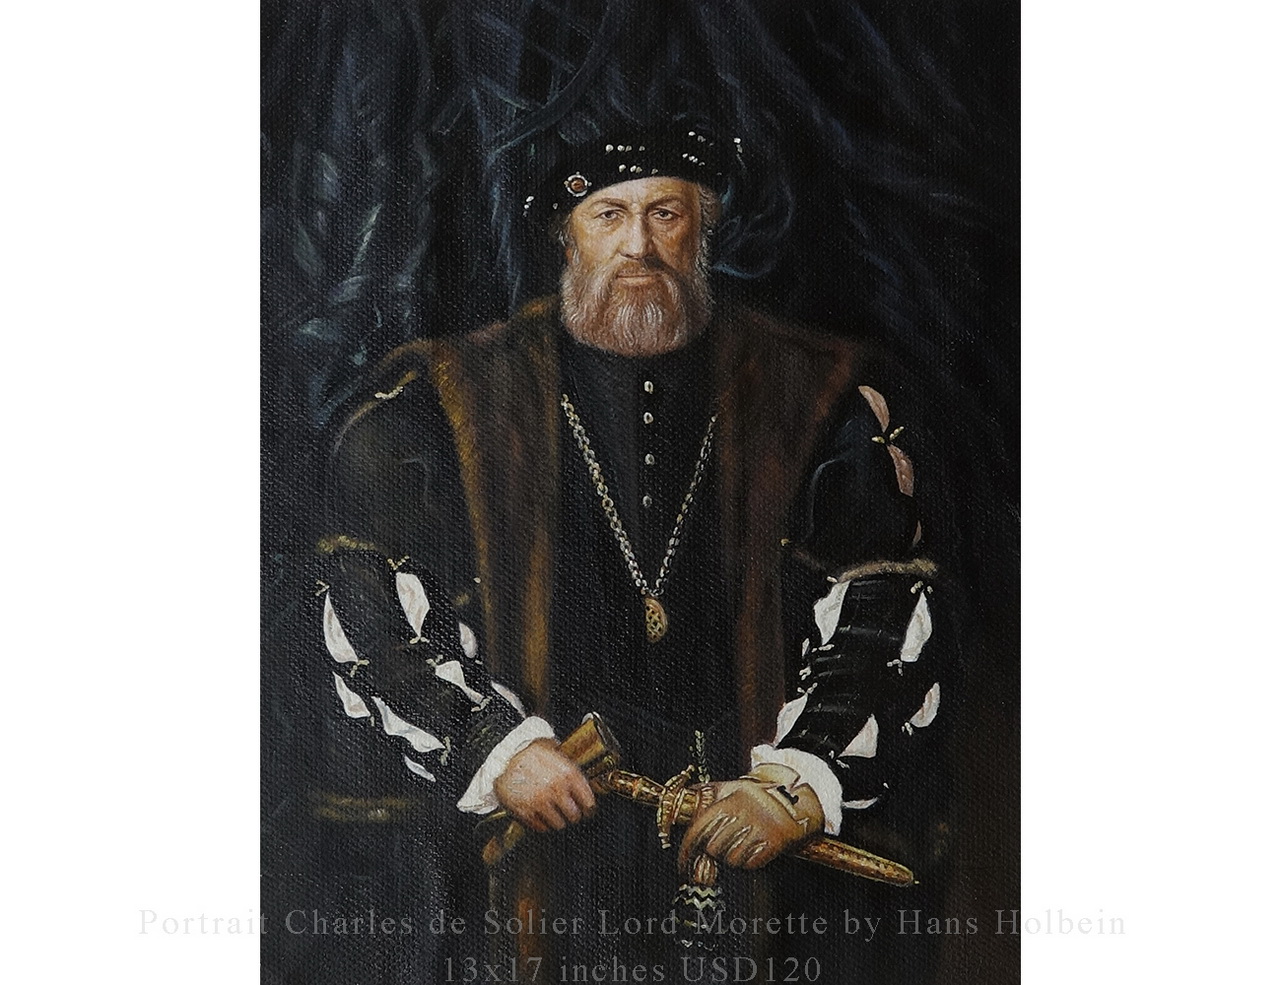 肖像画 シャルル・ド・ソリエ モレット卿 ハンス・ホルバイン作 13x17インチ USD49油絵